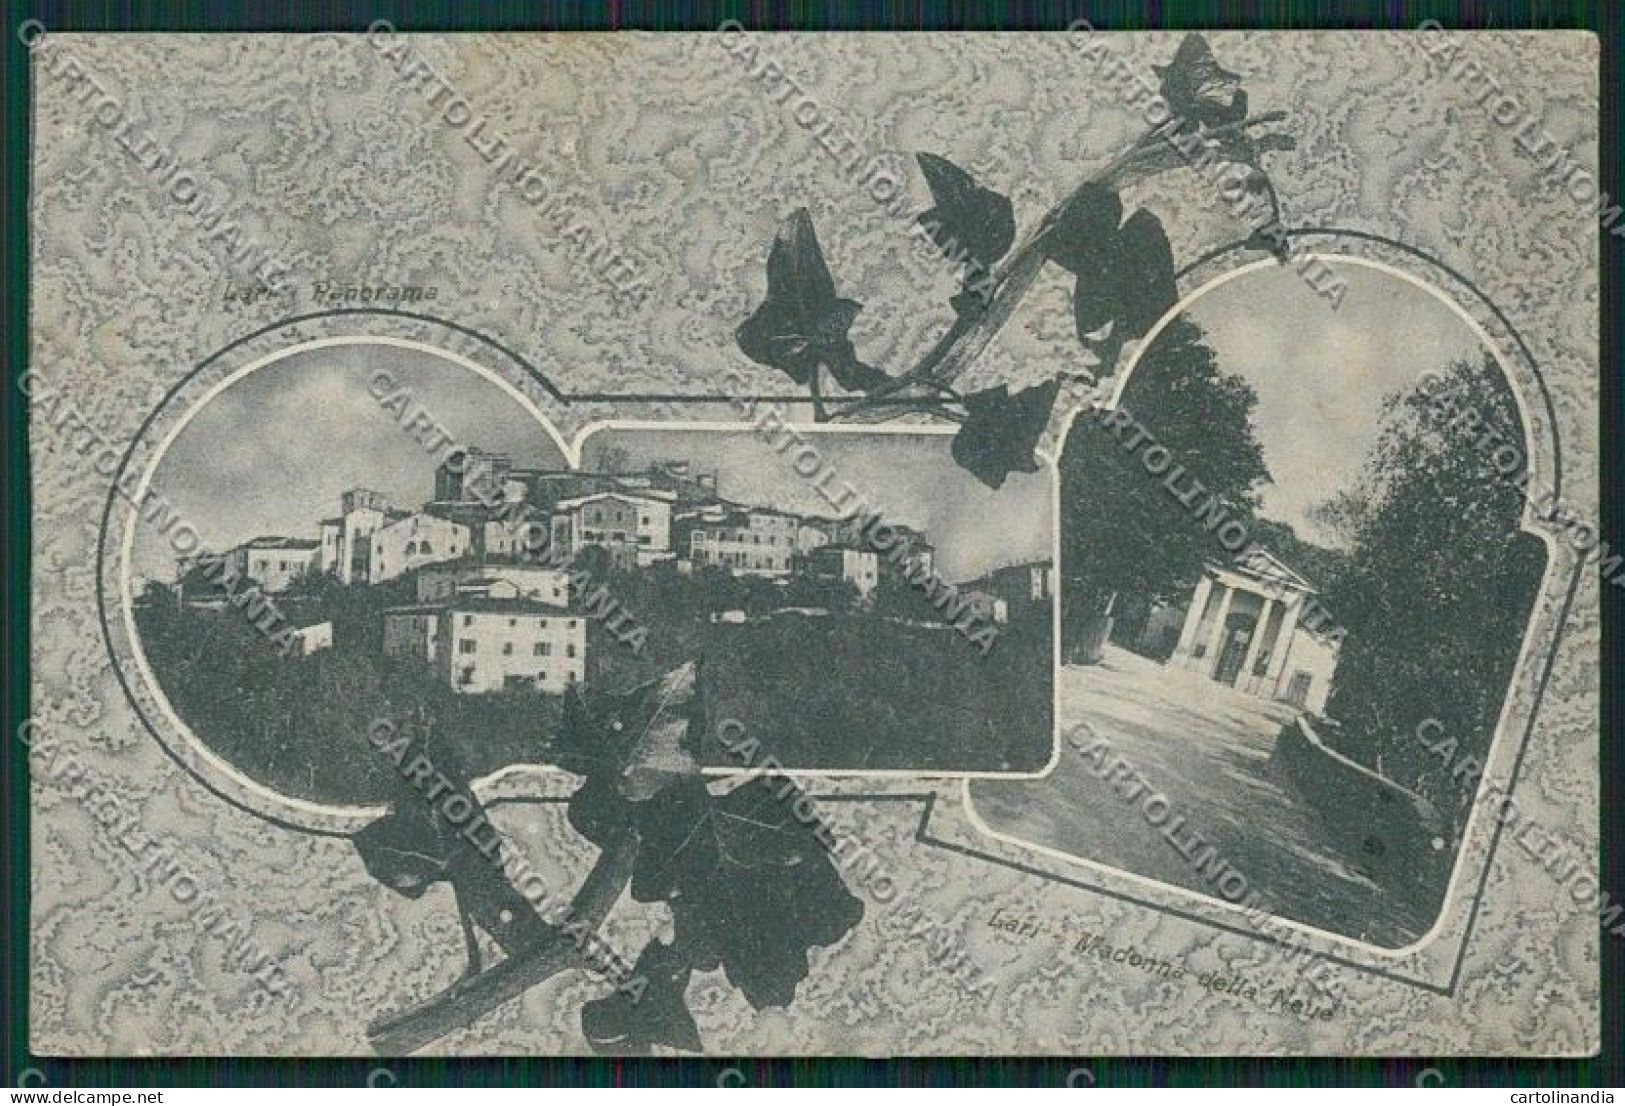 Pisa Lari Cartolina QQ3236 - Pisa